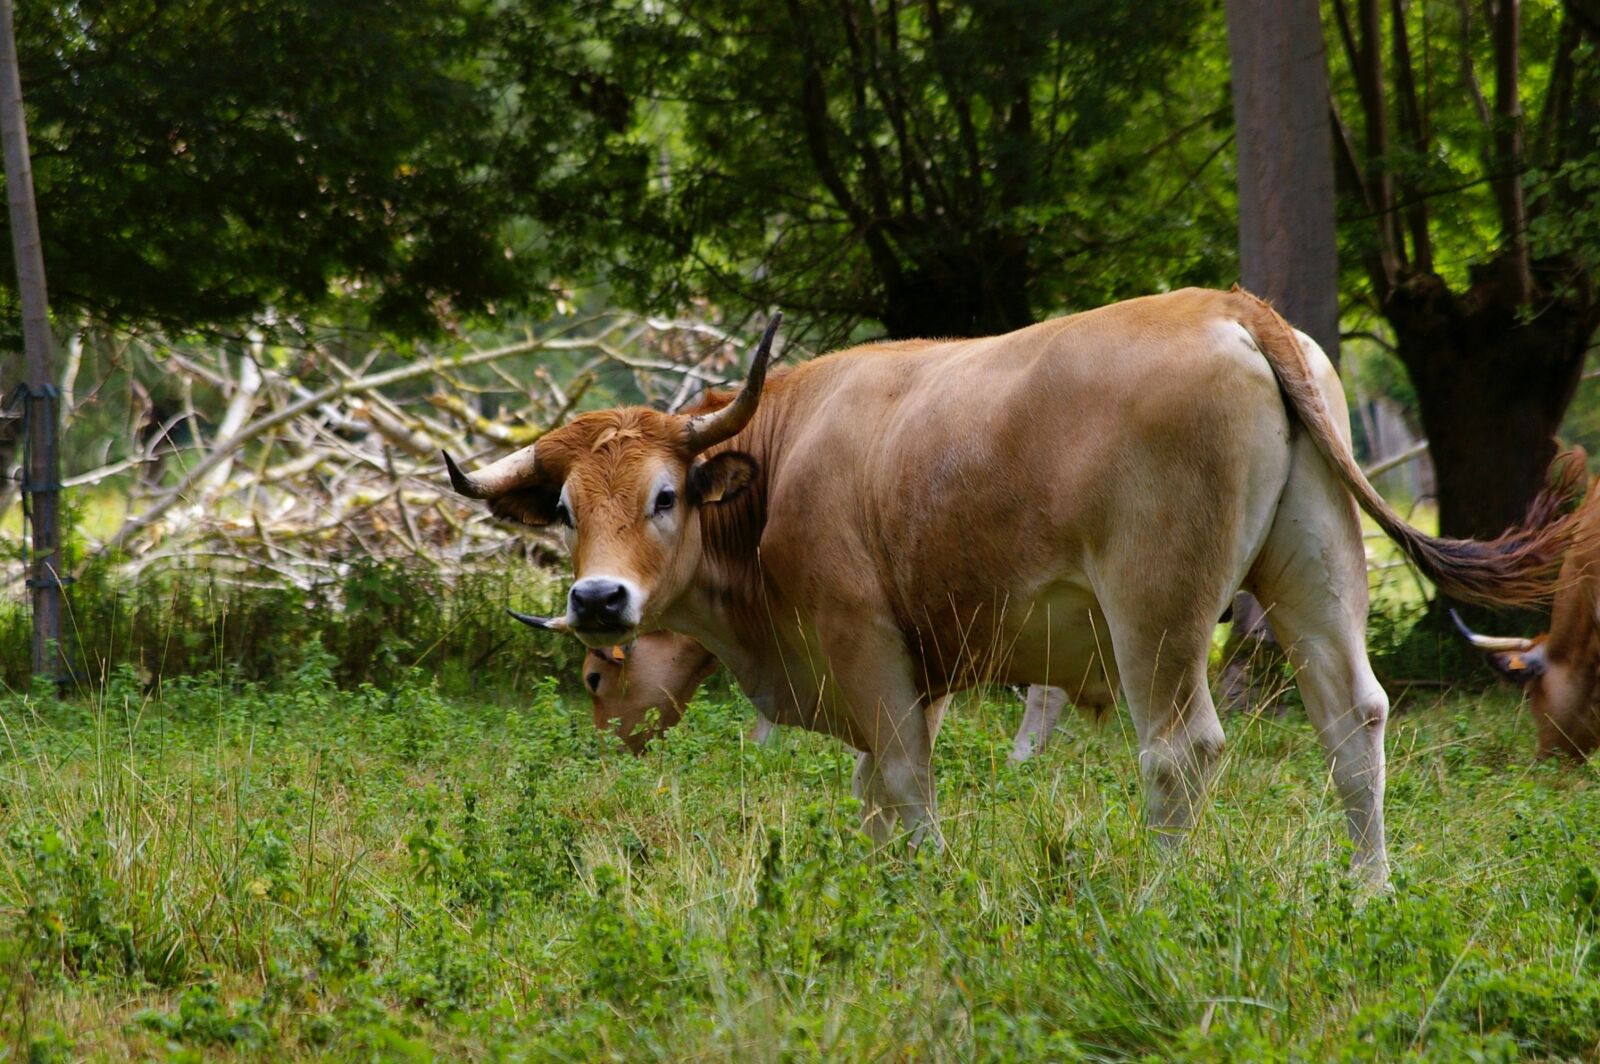 Pentax *ist DL sample photo. Cow maraichine, cow, prairie photography